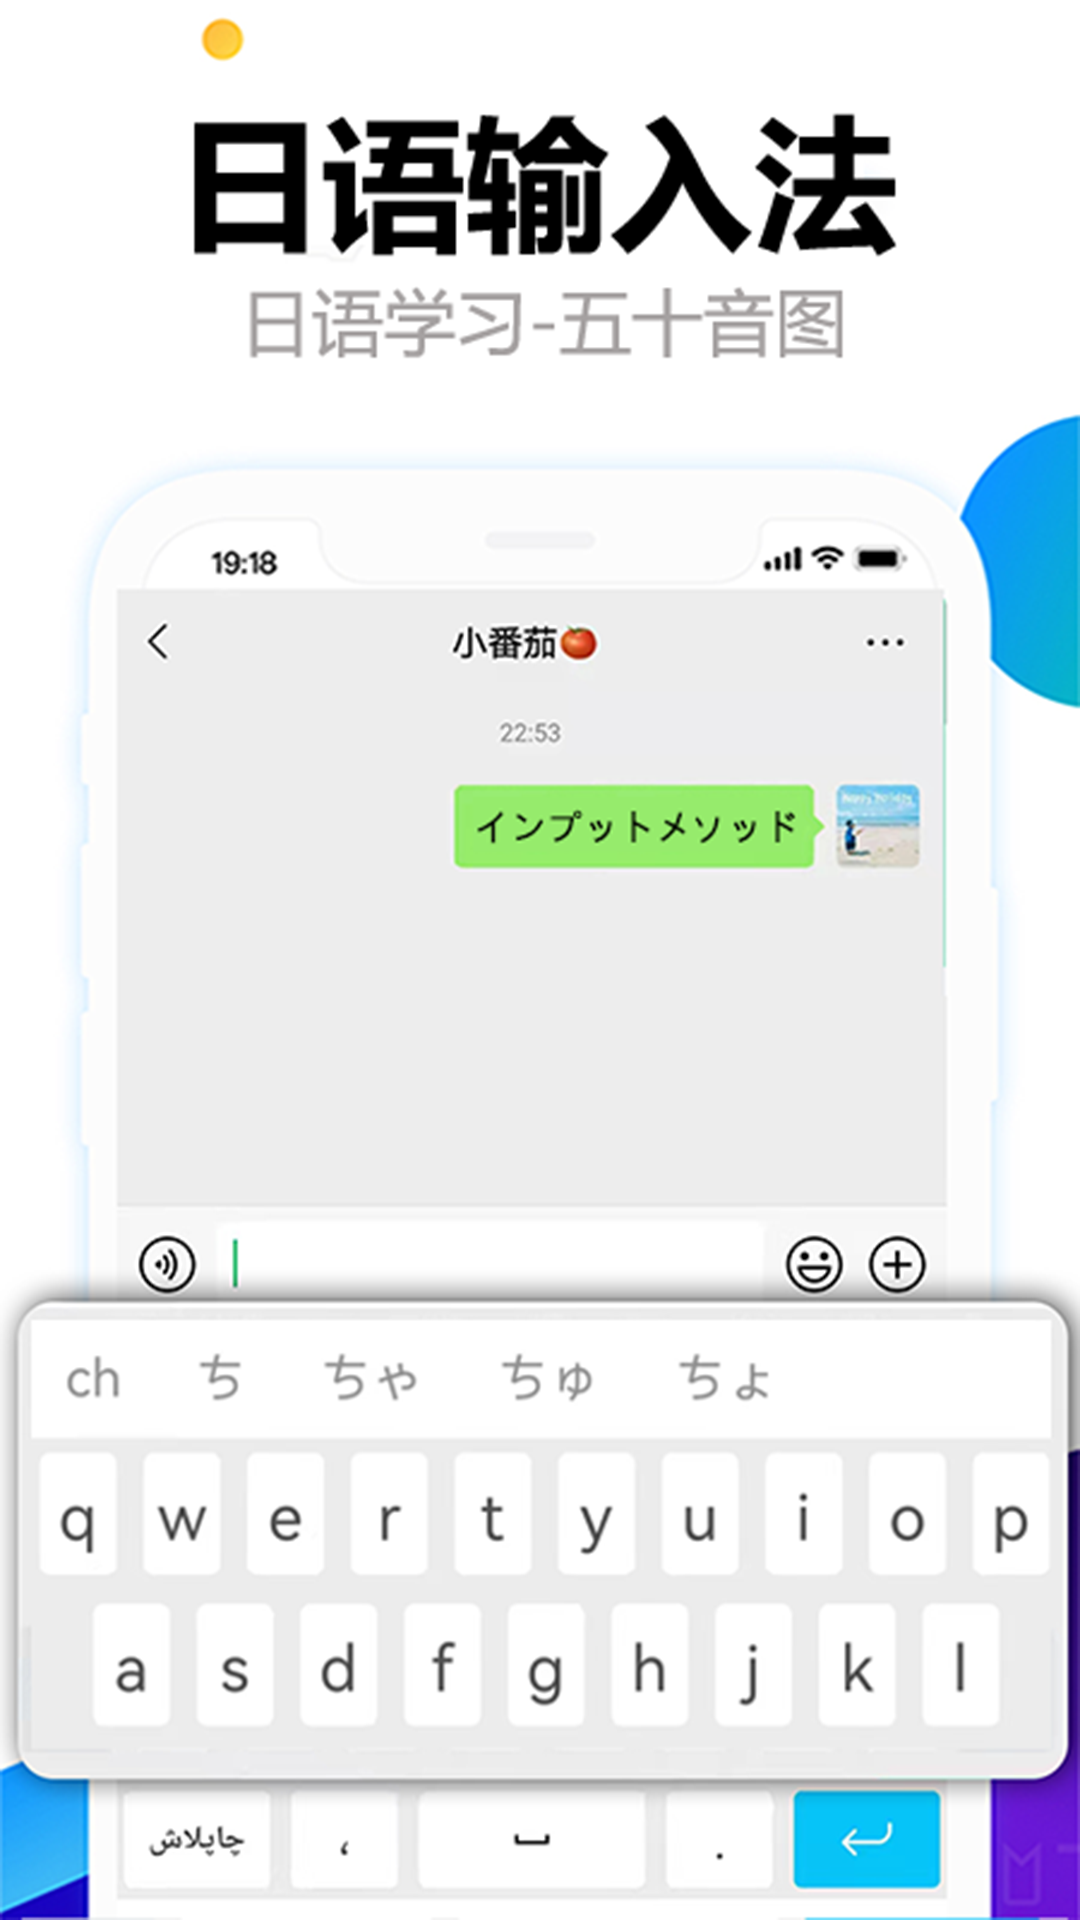 日语输入法五十音图v1.0.0